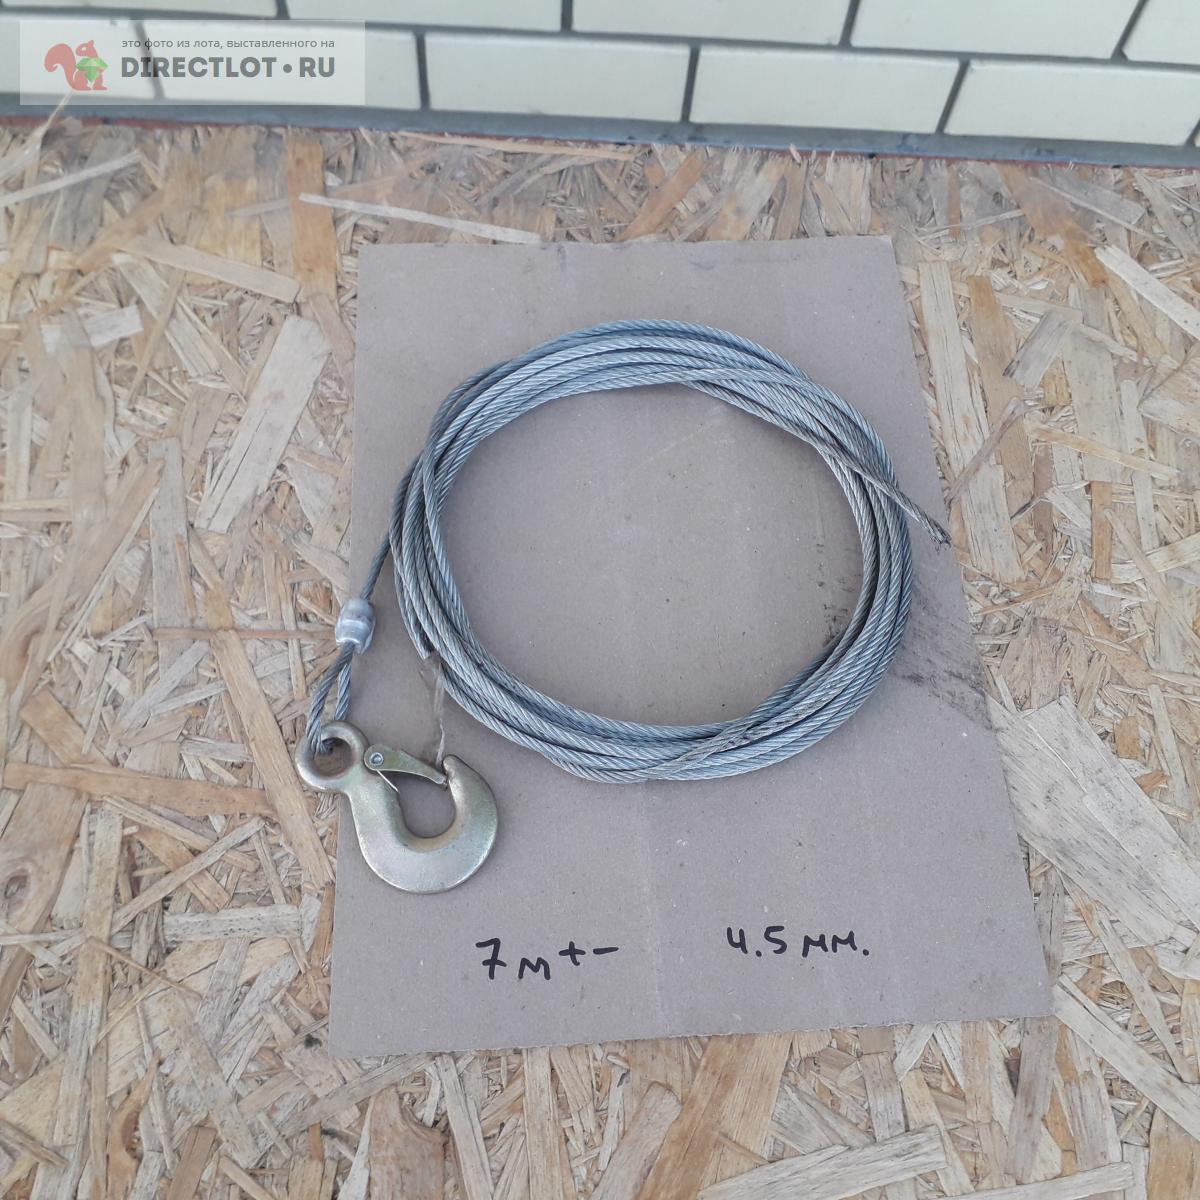  стальной с крючком, ф 4.5 мм , длина 7 м +- .  в Казани цена .